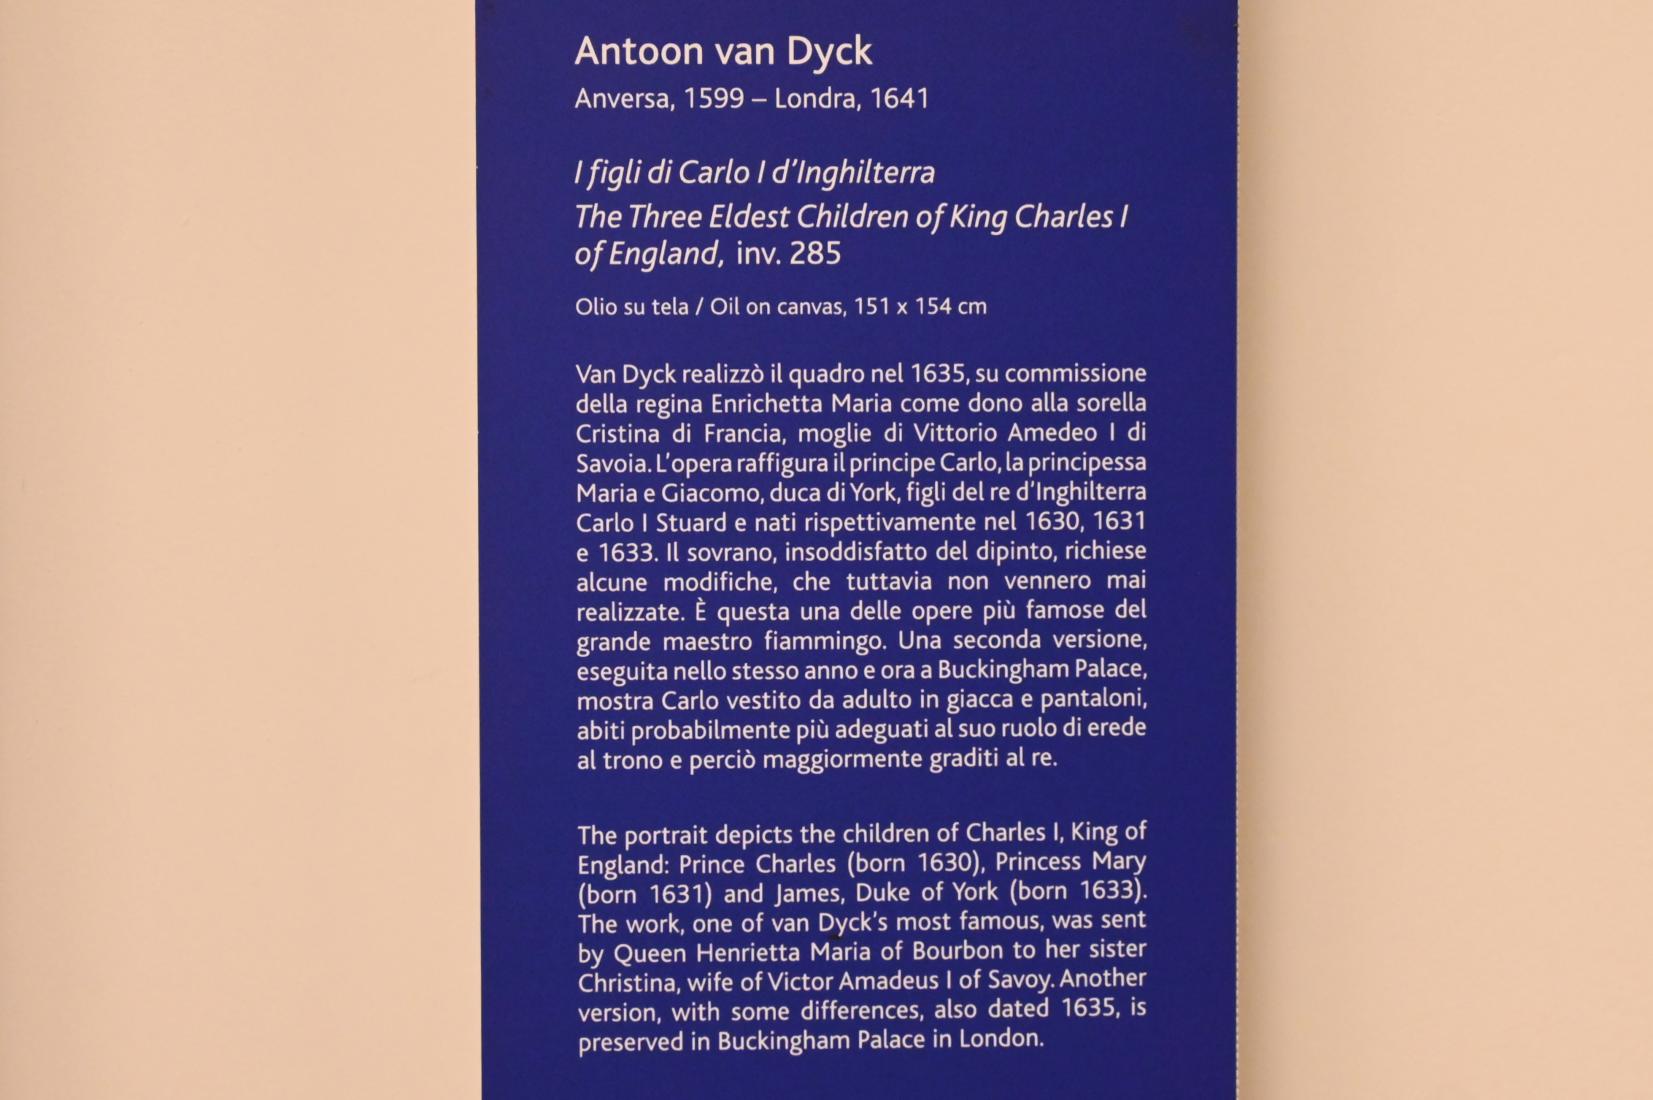 Anthonis (Anton) van Dyck (1614–1641), Die drei ältesten Kinder von König Karl I. von England, Turin, Galleria Sabauda, Saal 29, um 1635, Bild 2/2